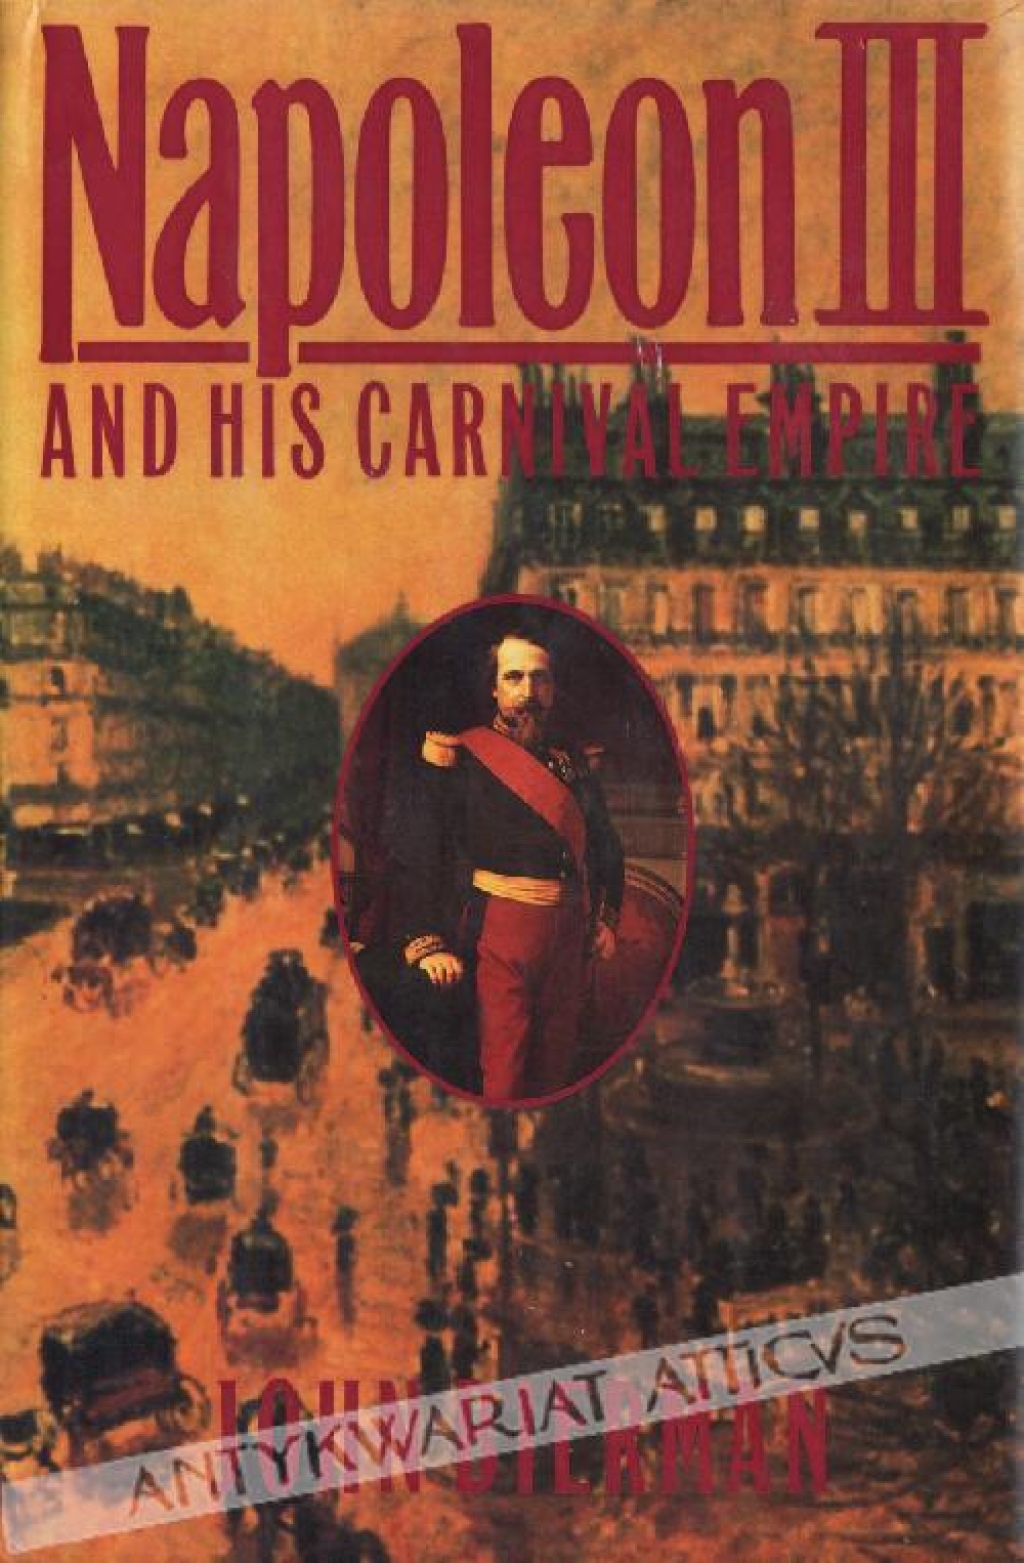 Napoleon III and his Carnival Empire